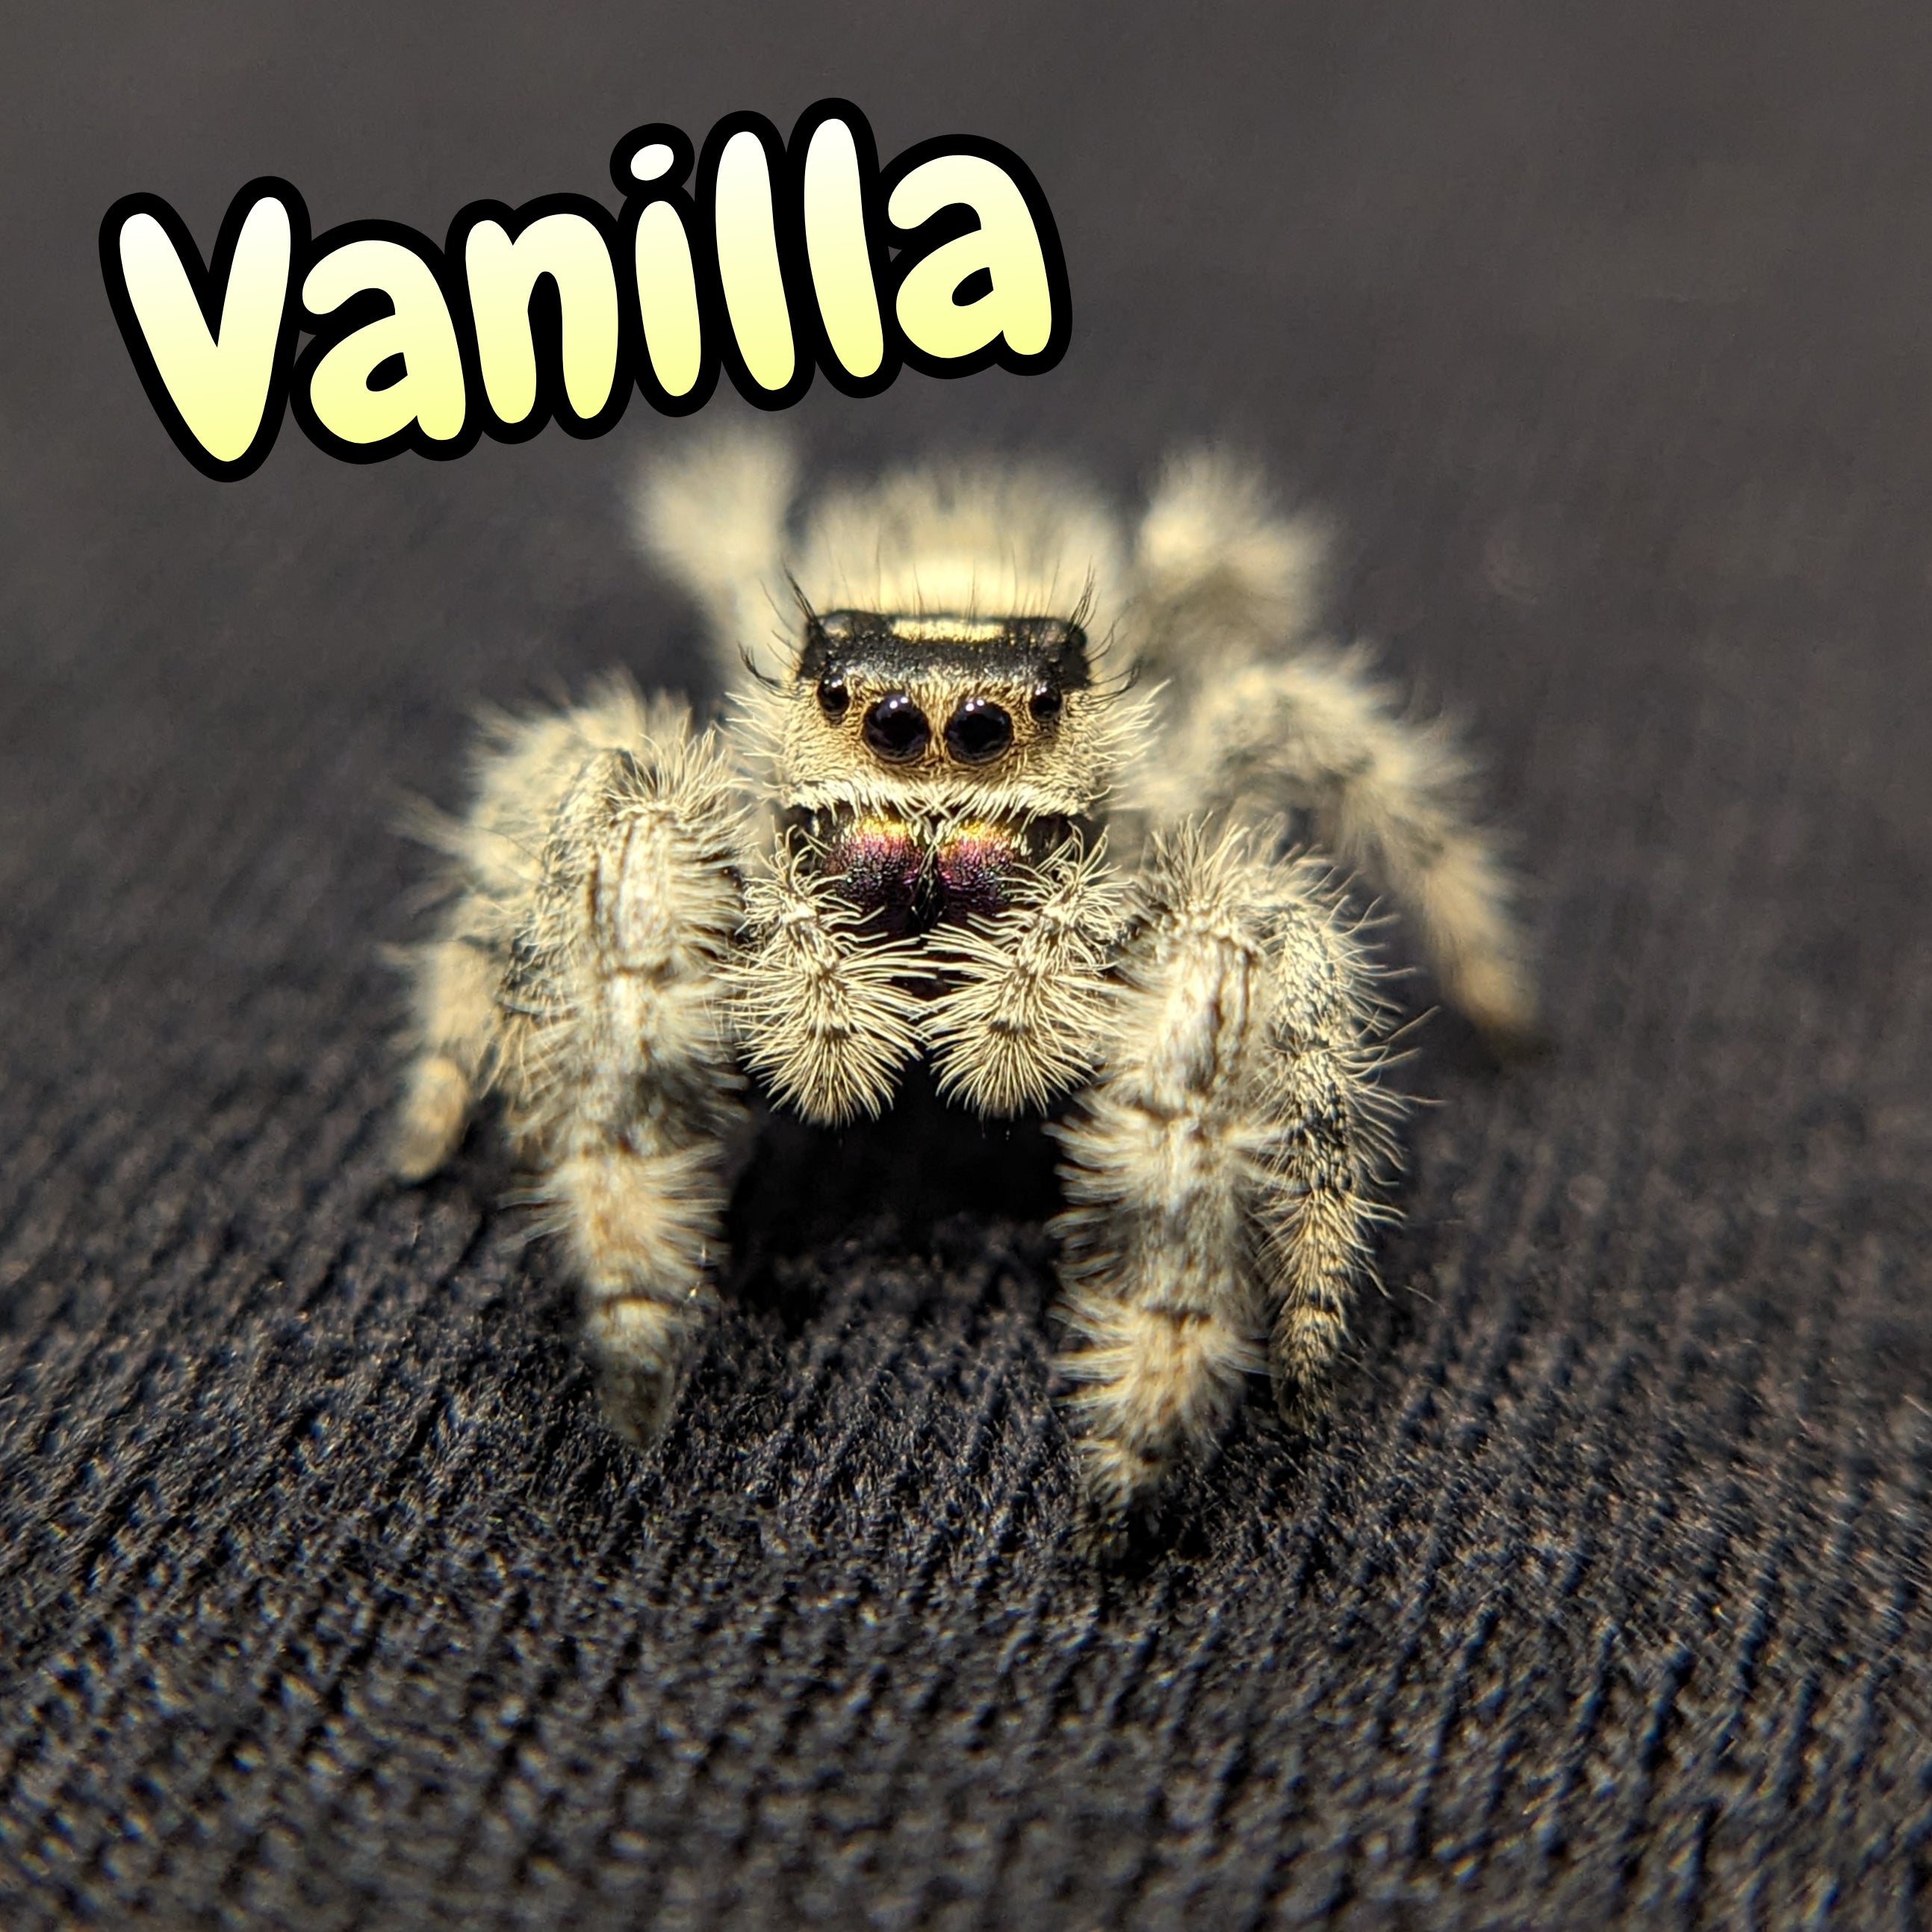 Regal Jumping Spider "Vanilla"